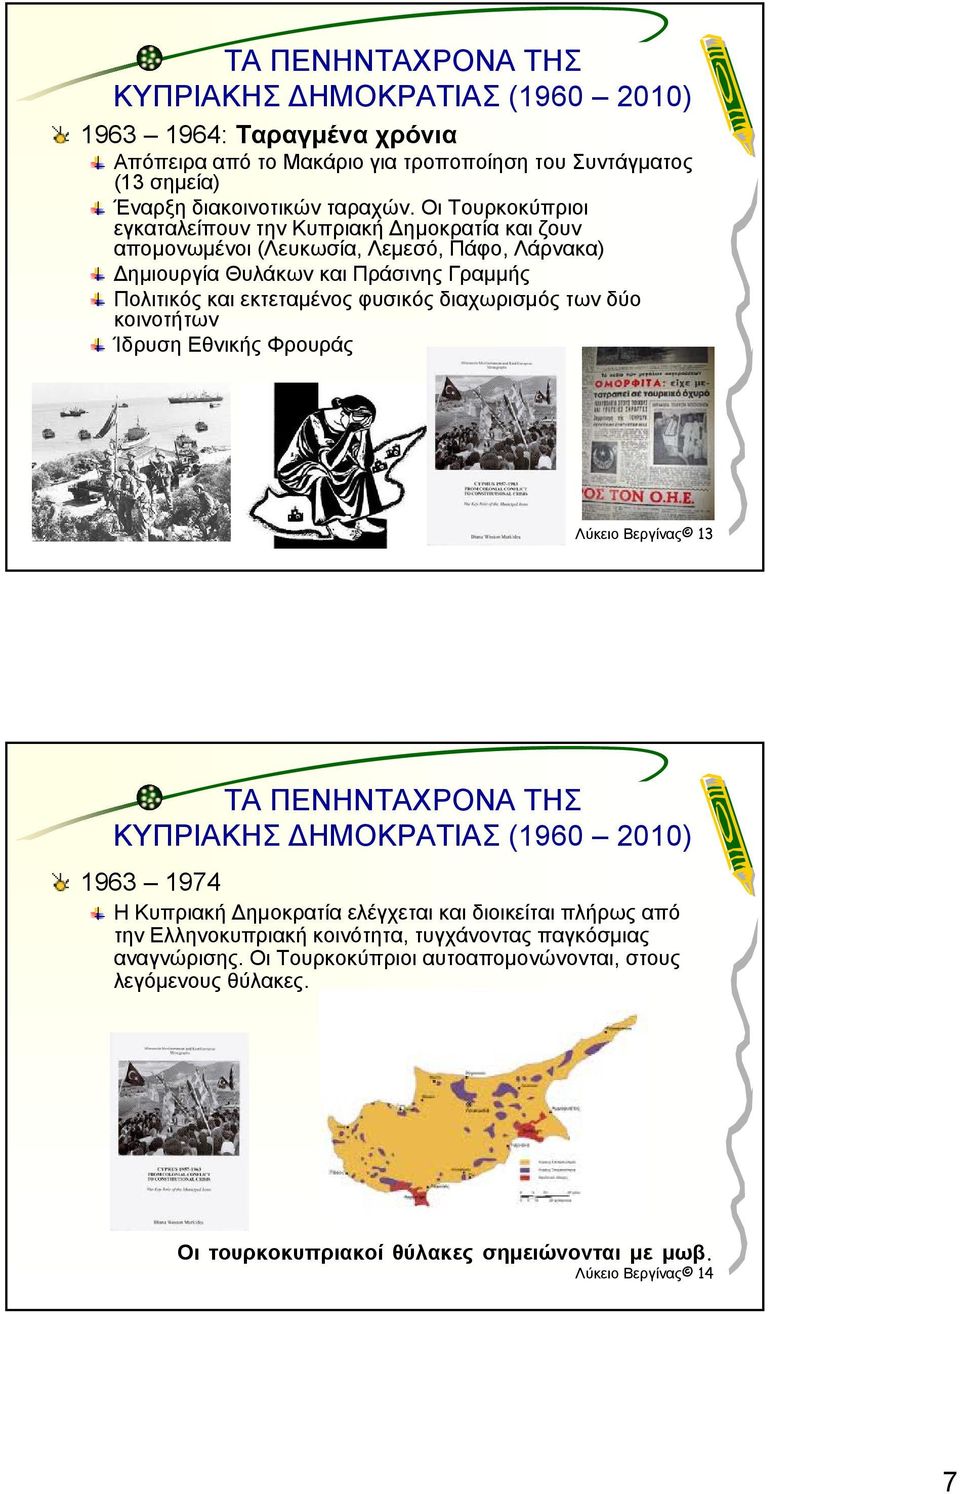 εκτεταμένος φυσικός διαχωρισμός των δύο κοινοτήτων Ίδρυση Εθνικής Φρουράς Λύκειο Βεργίνας 13 ΤΑ ΠΕΝΗΝΤΑΧΡΟΝΑ ΤΗΣ 1963 1974 Η Κυπριακή Δημοκρατία ελέγχεται και διοικείται